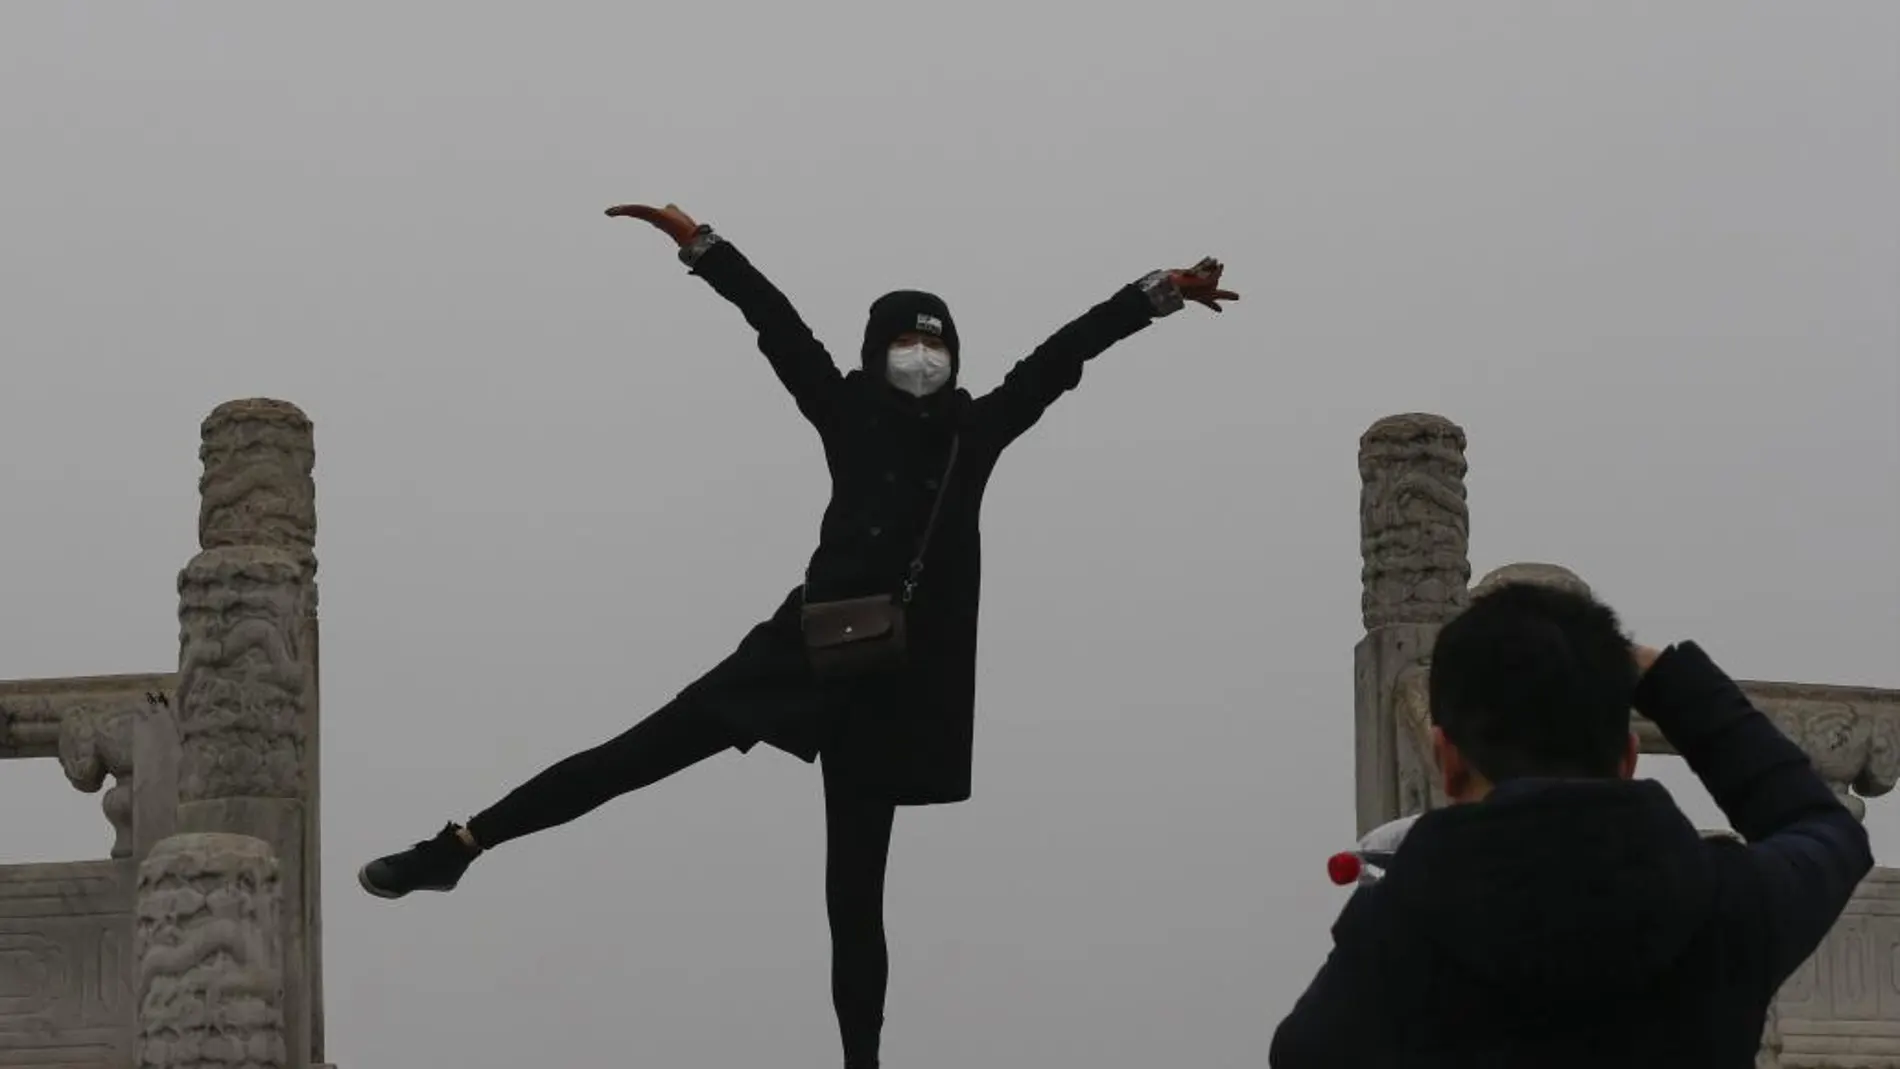 Una mujer posa para una foto mientras usa una mascarilla para protegerse contra la contaminación ambiental durante una visita al Templo del Cielo de Pekín (China), el pasado 8 de diciembre